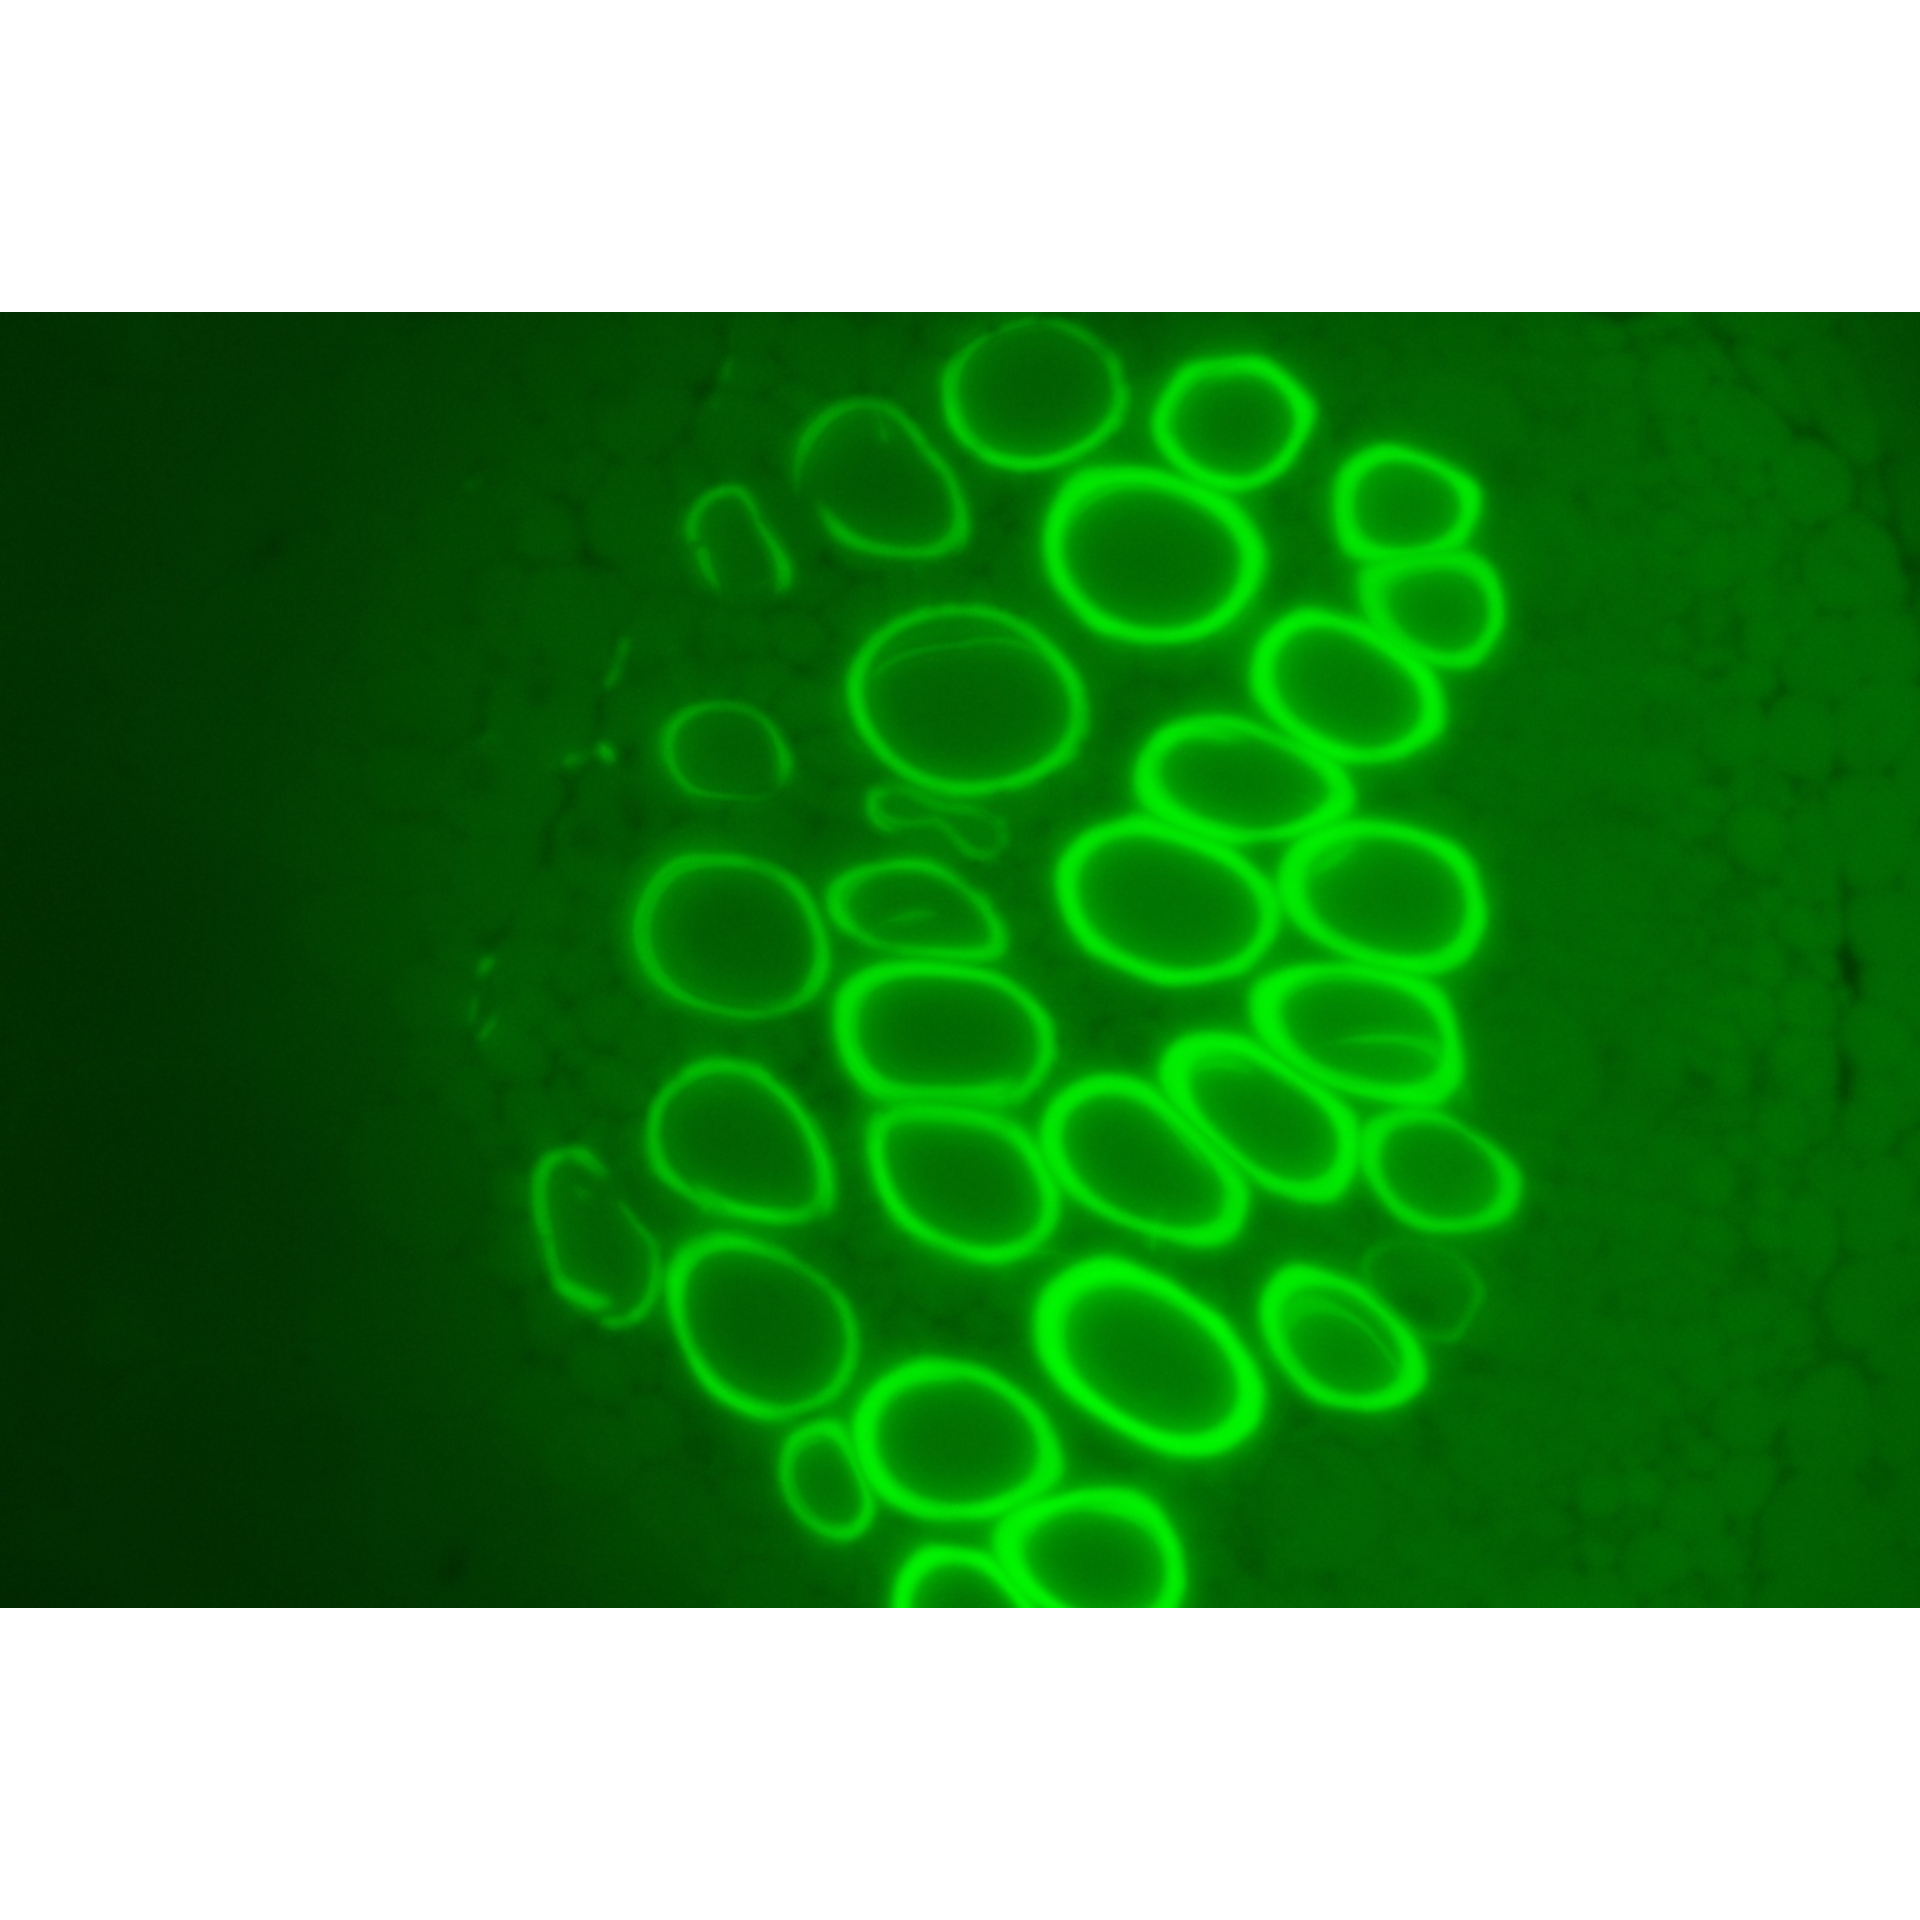 科研级正置生物显微镜荧光显微镜LK-53